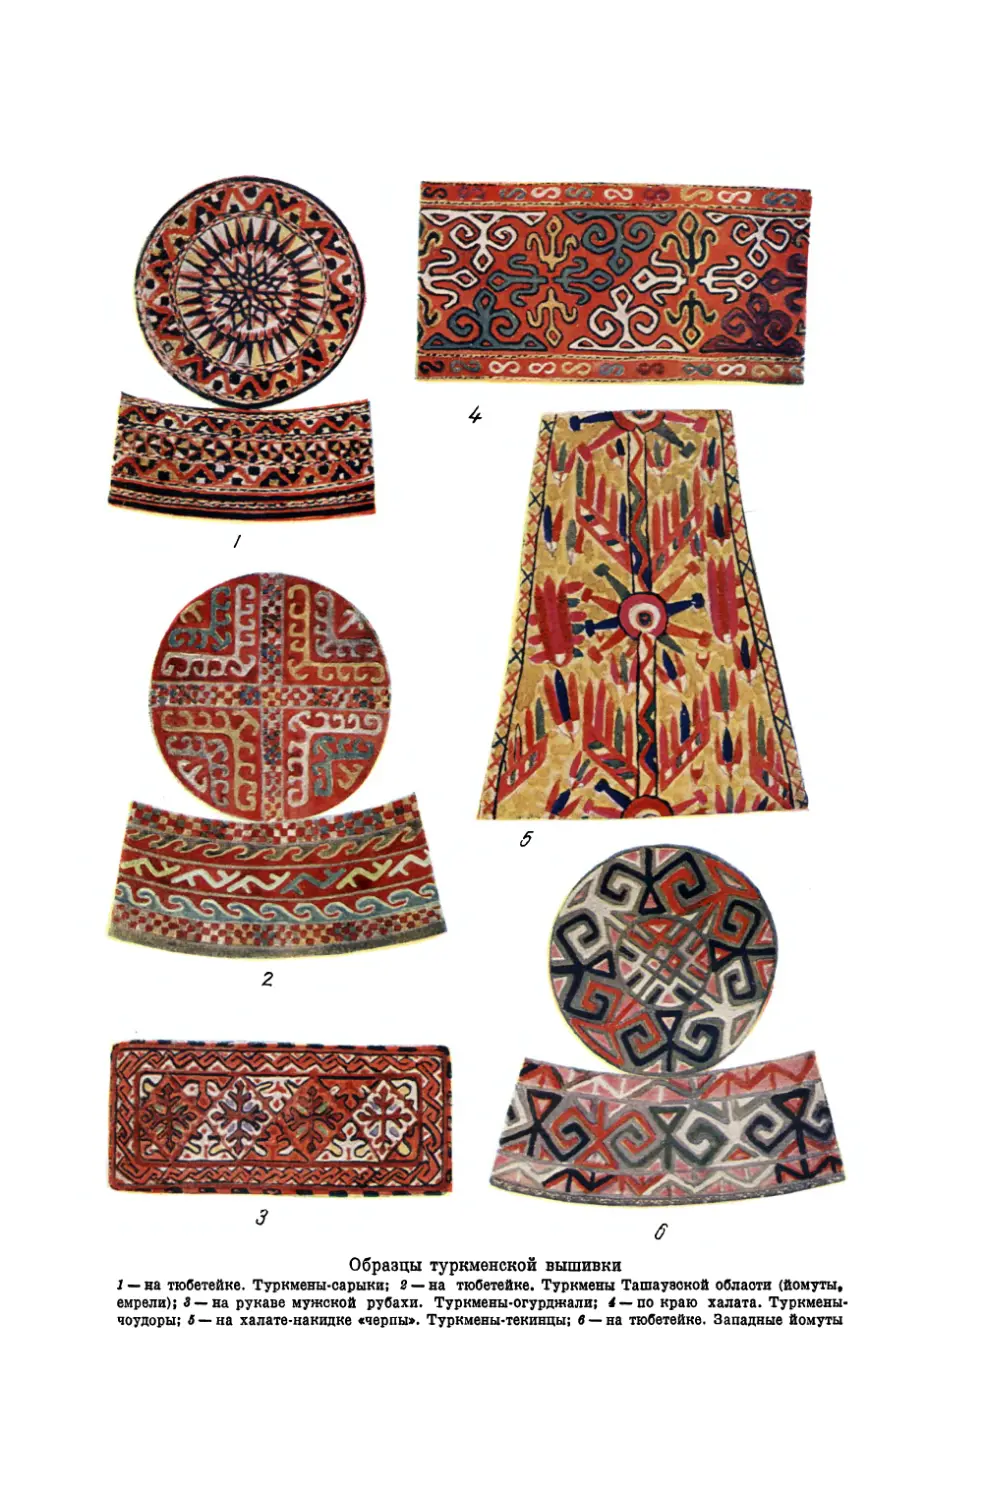 Вклейка. Образцы туркменской вышивки